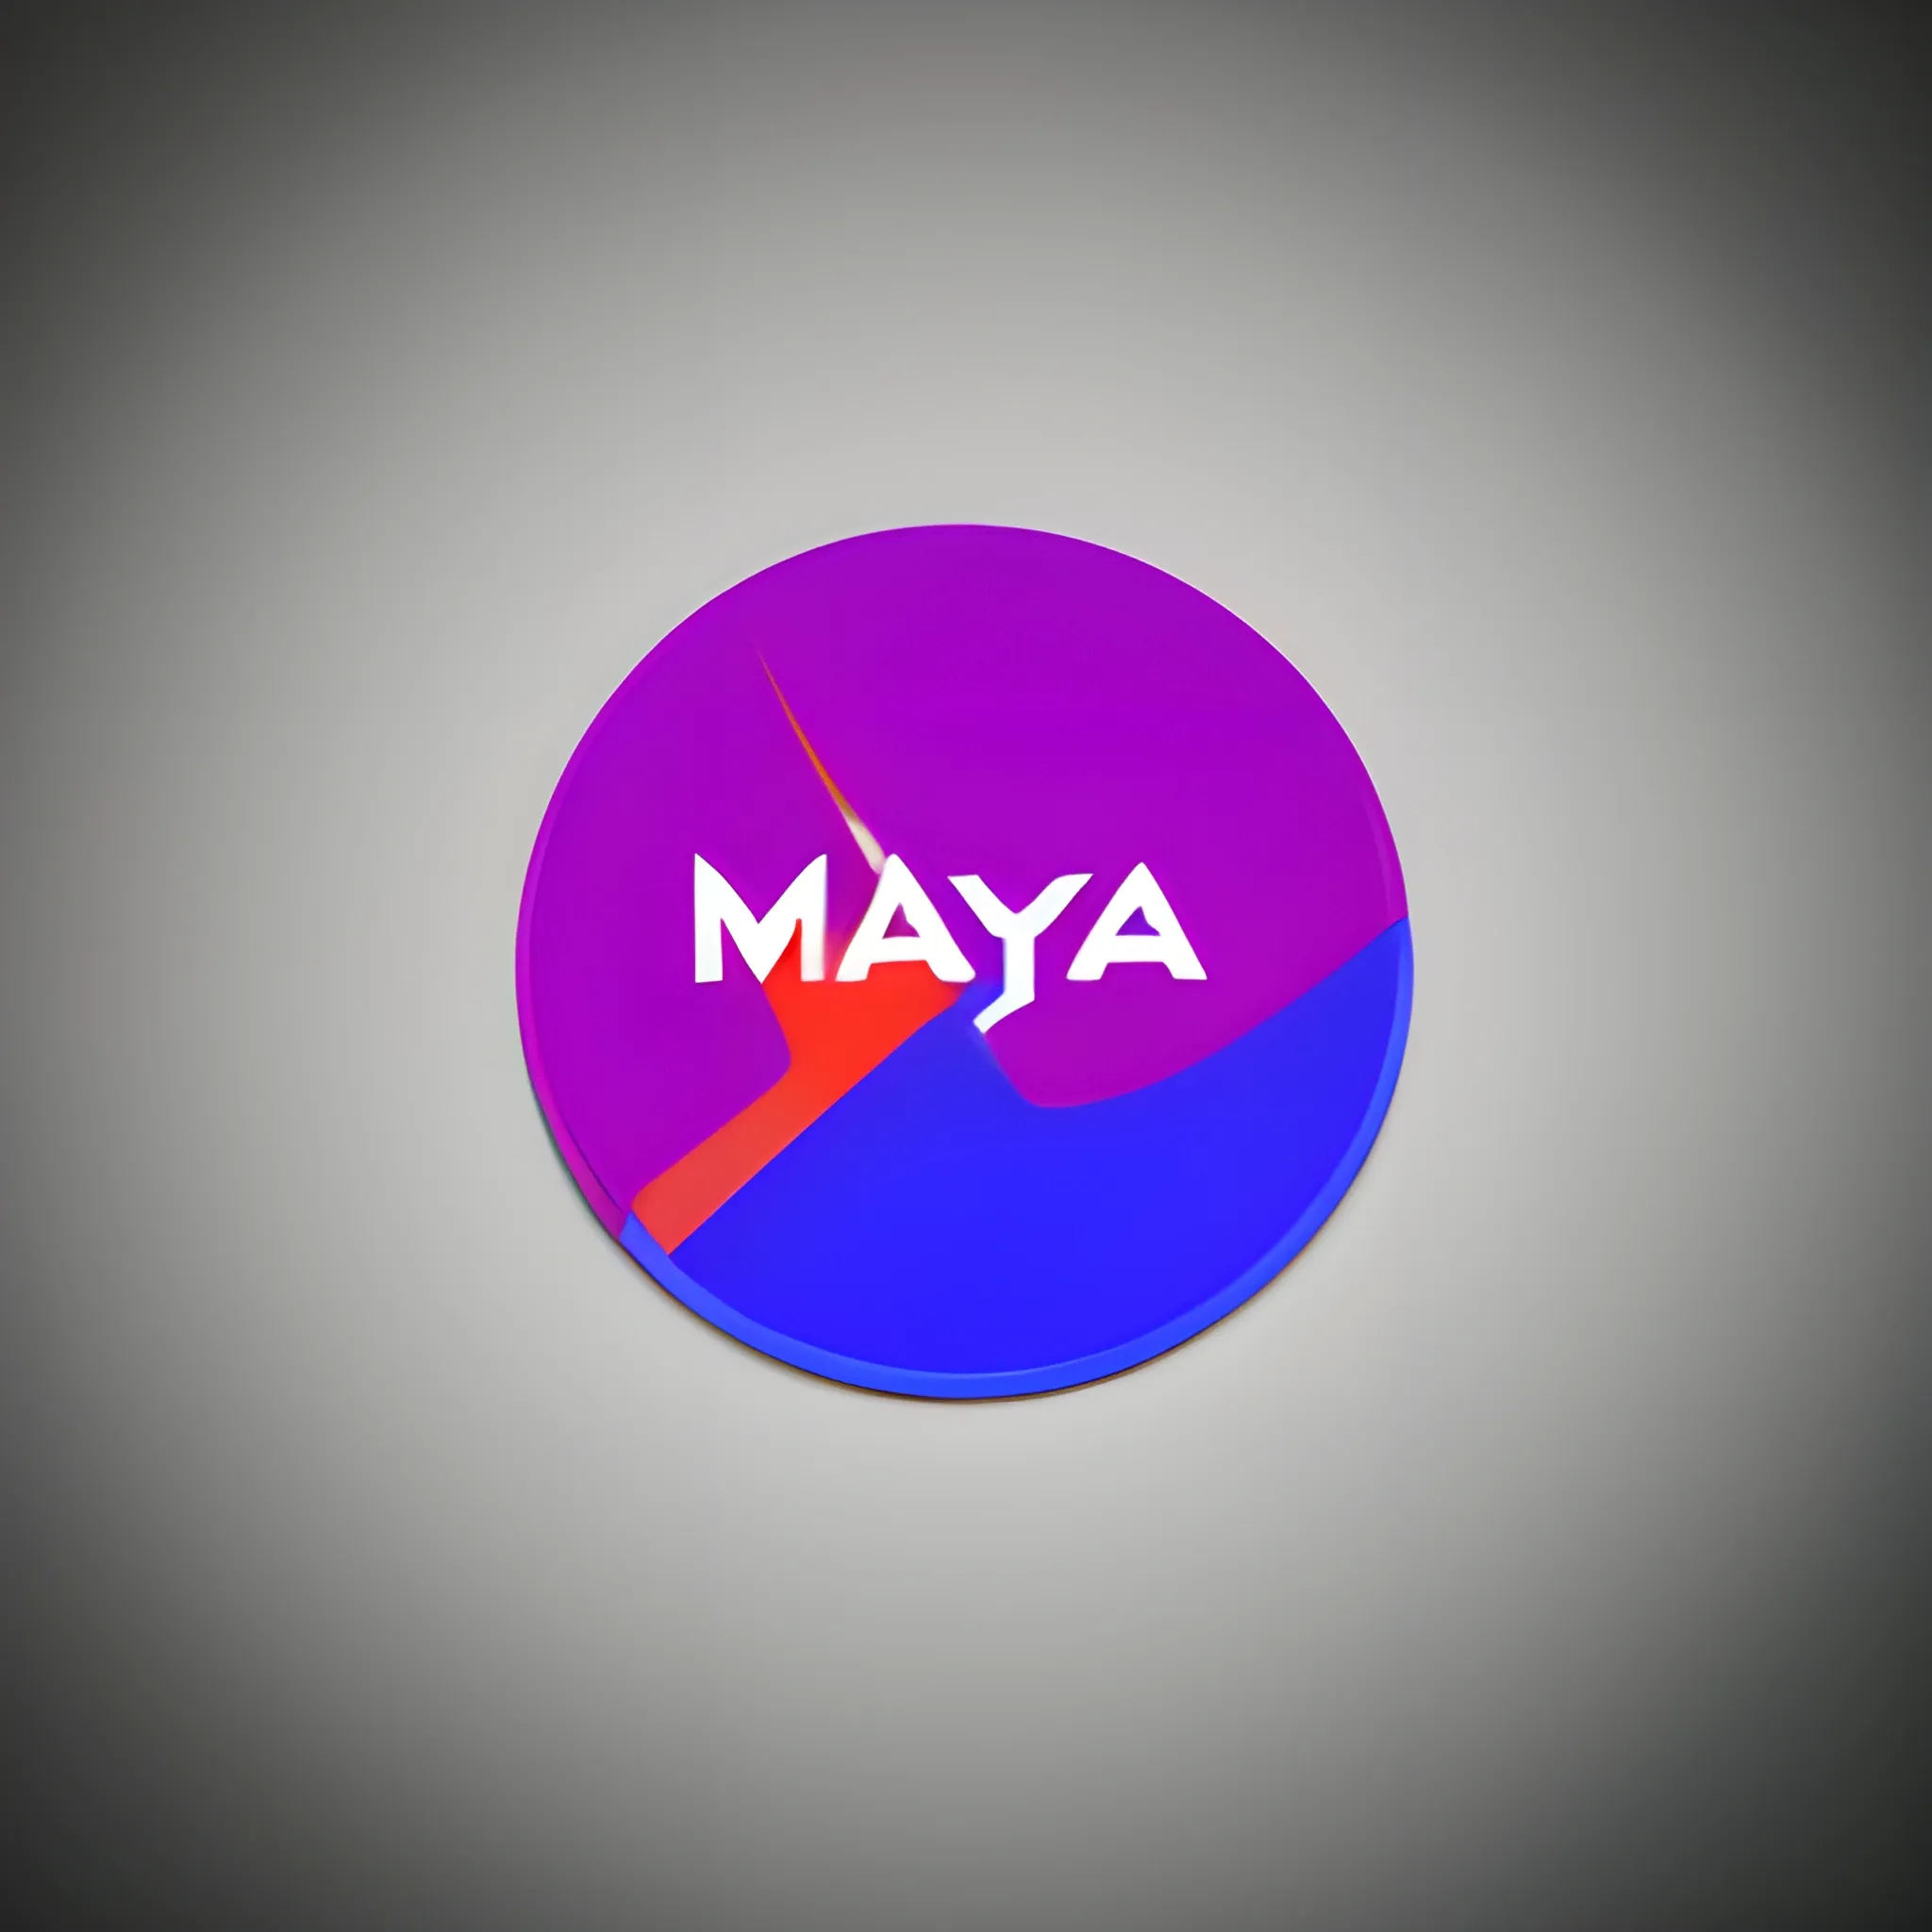 Maya Logo Png - Veil Of Maya Logo Png Clipart - Large Size Png Image -  PikPng